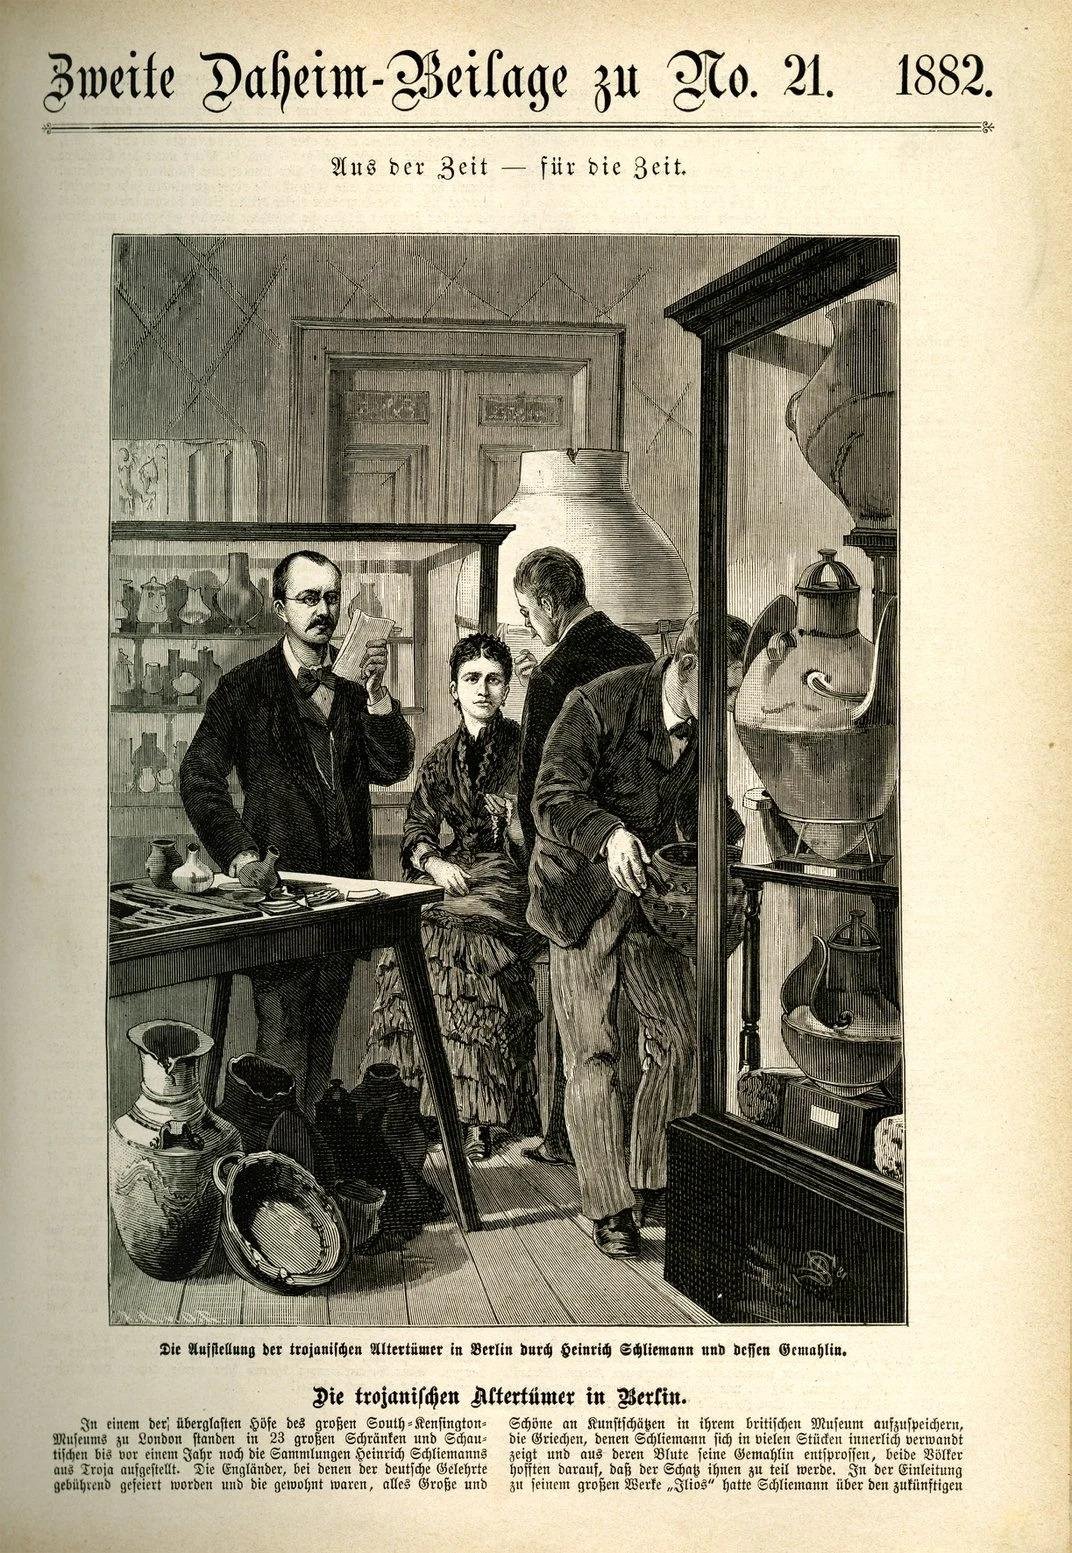 Desenho de Heinrich Schliemann e sua esposa expondo antiguidades troianas em Berlim, em 1882. (Fonte: Staatliche Museen zu Berlin/Museum für Vor- und Frühgeschichte)